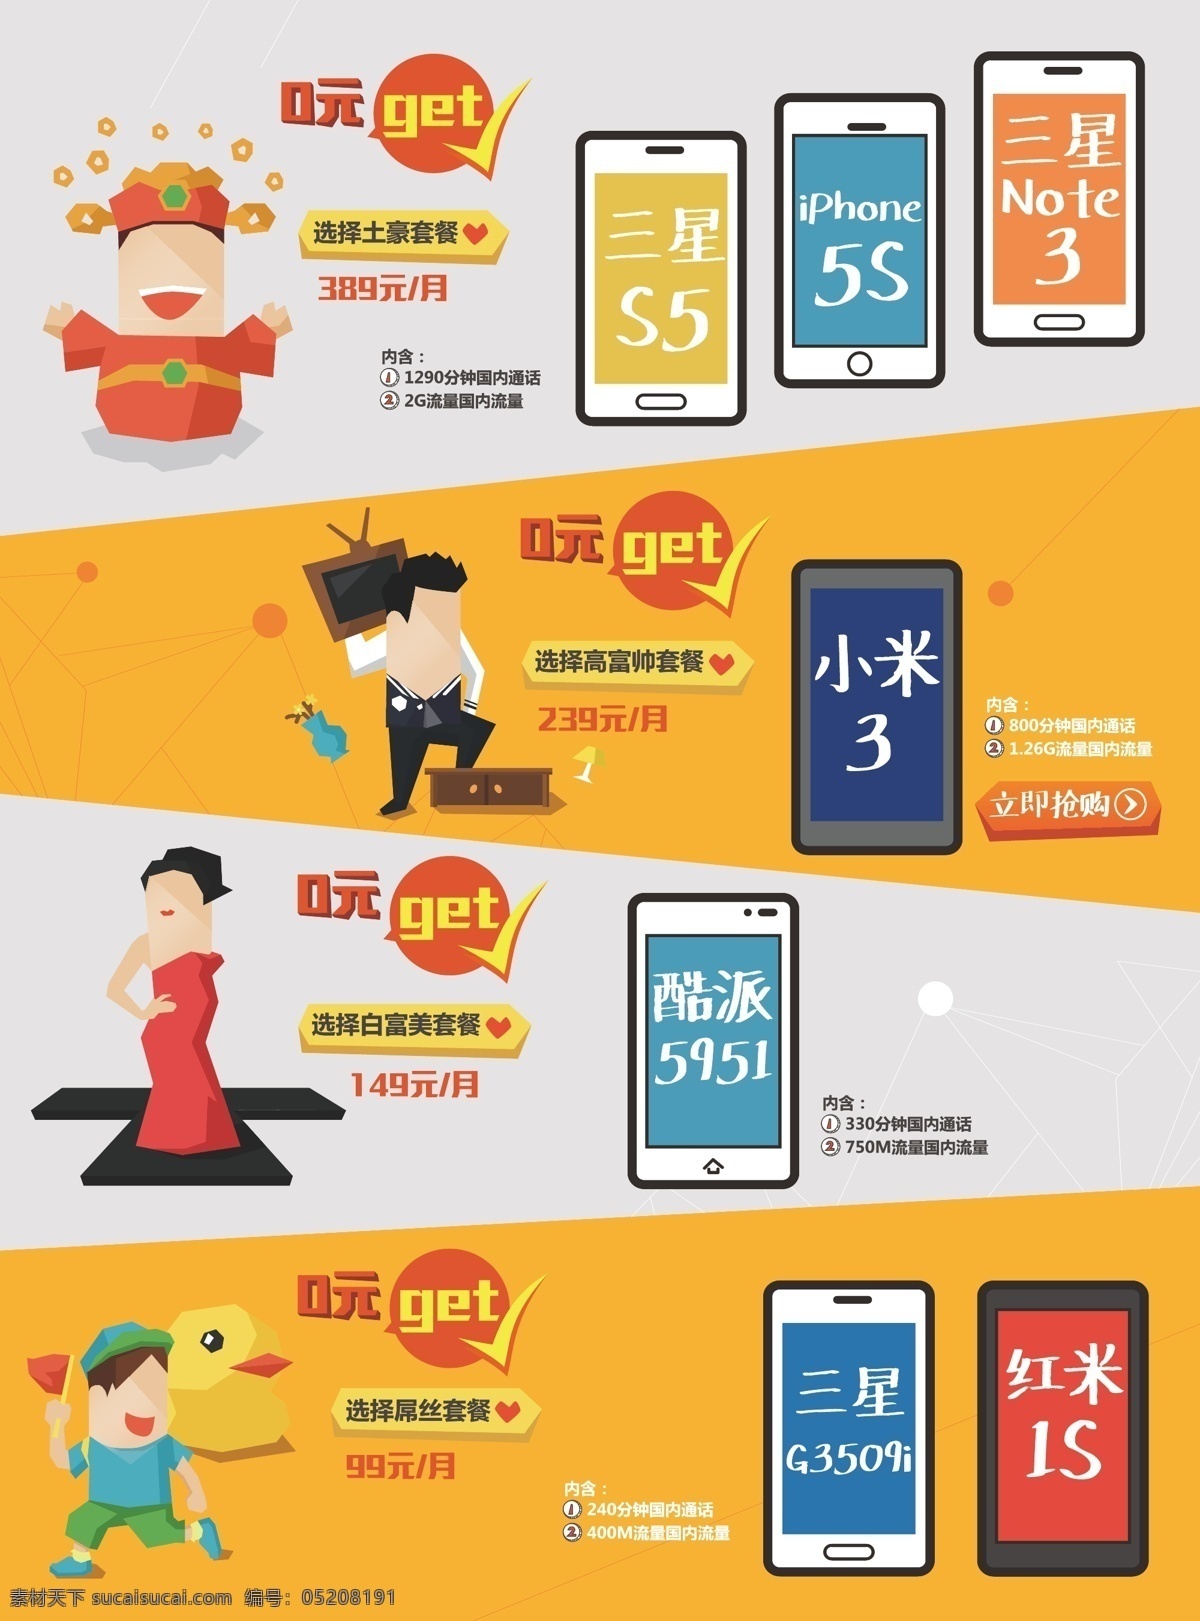 光大银行 a4 宣传 单张 三星s5 红米 iphone5s 中国电信 社保卡 矢量